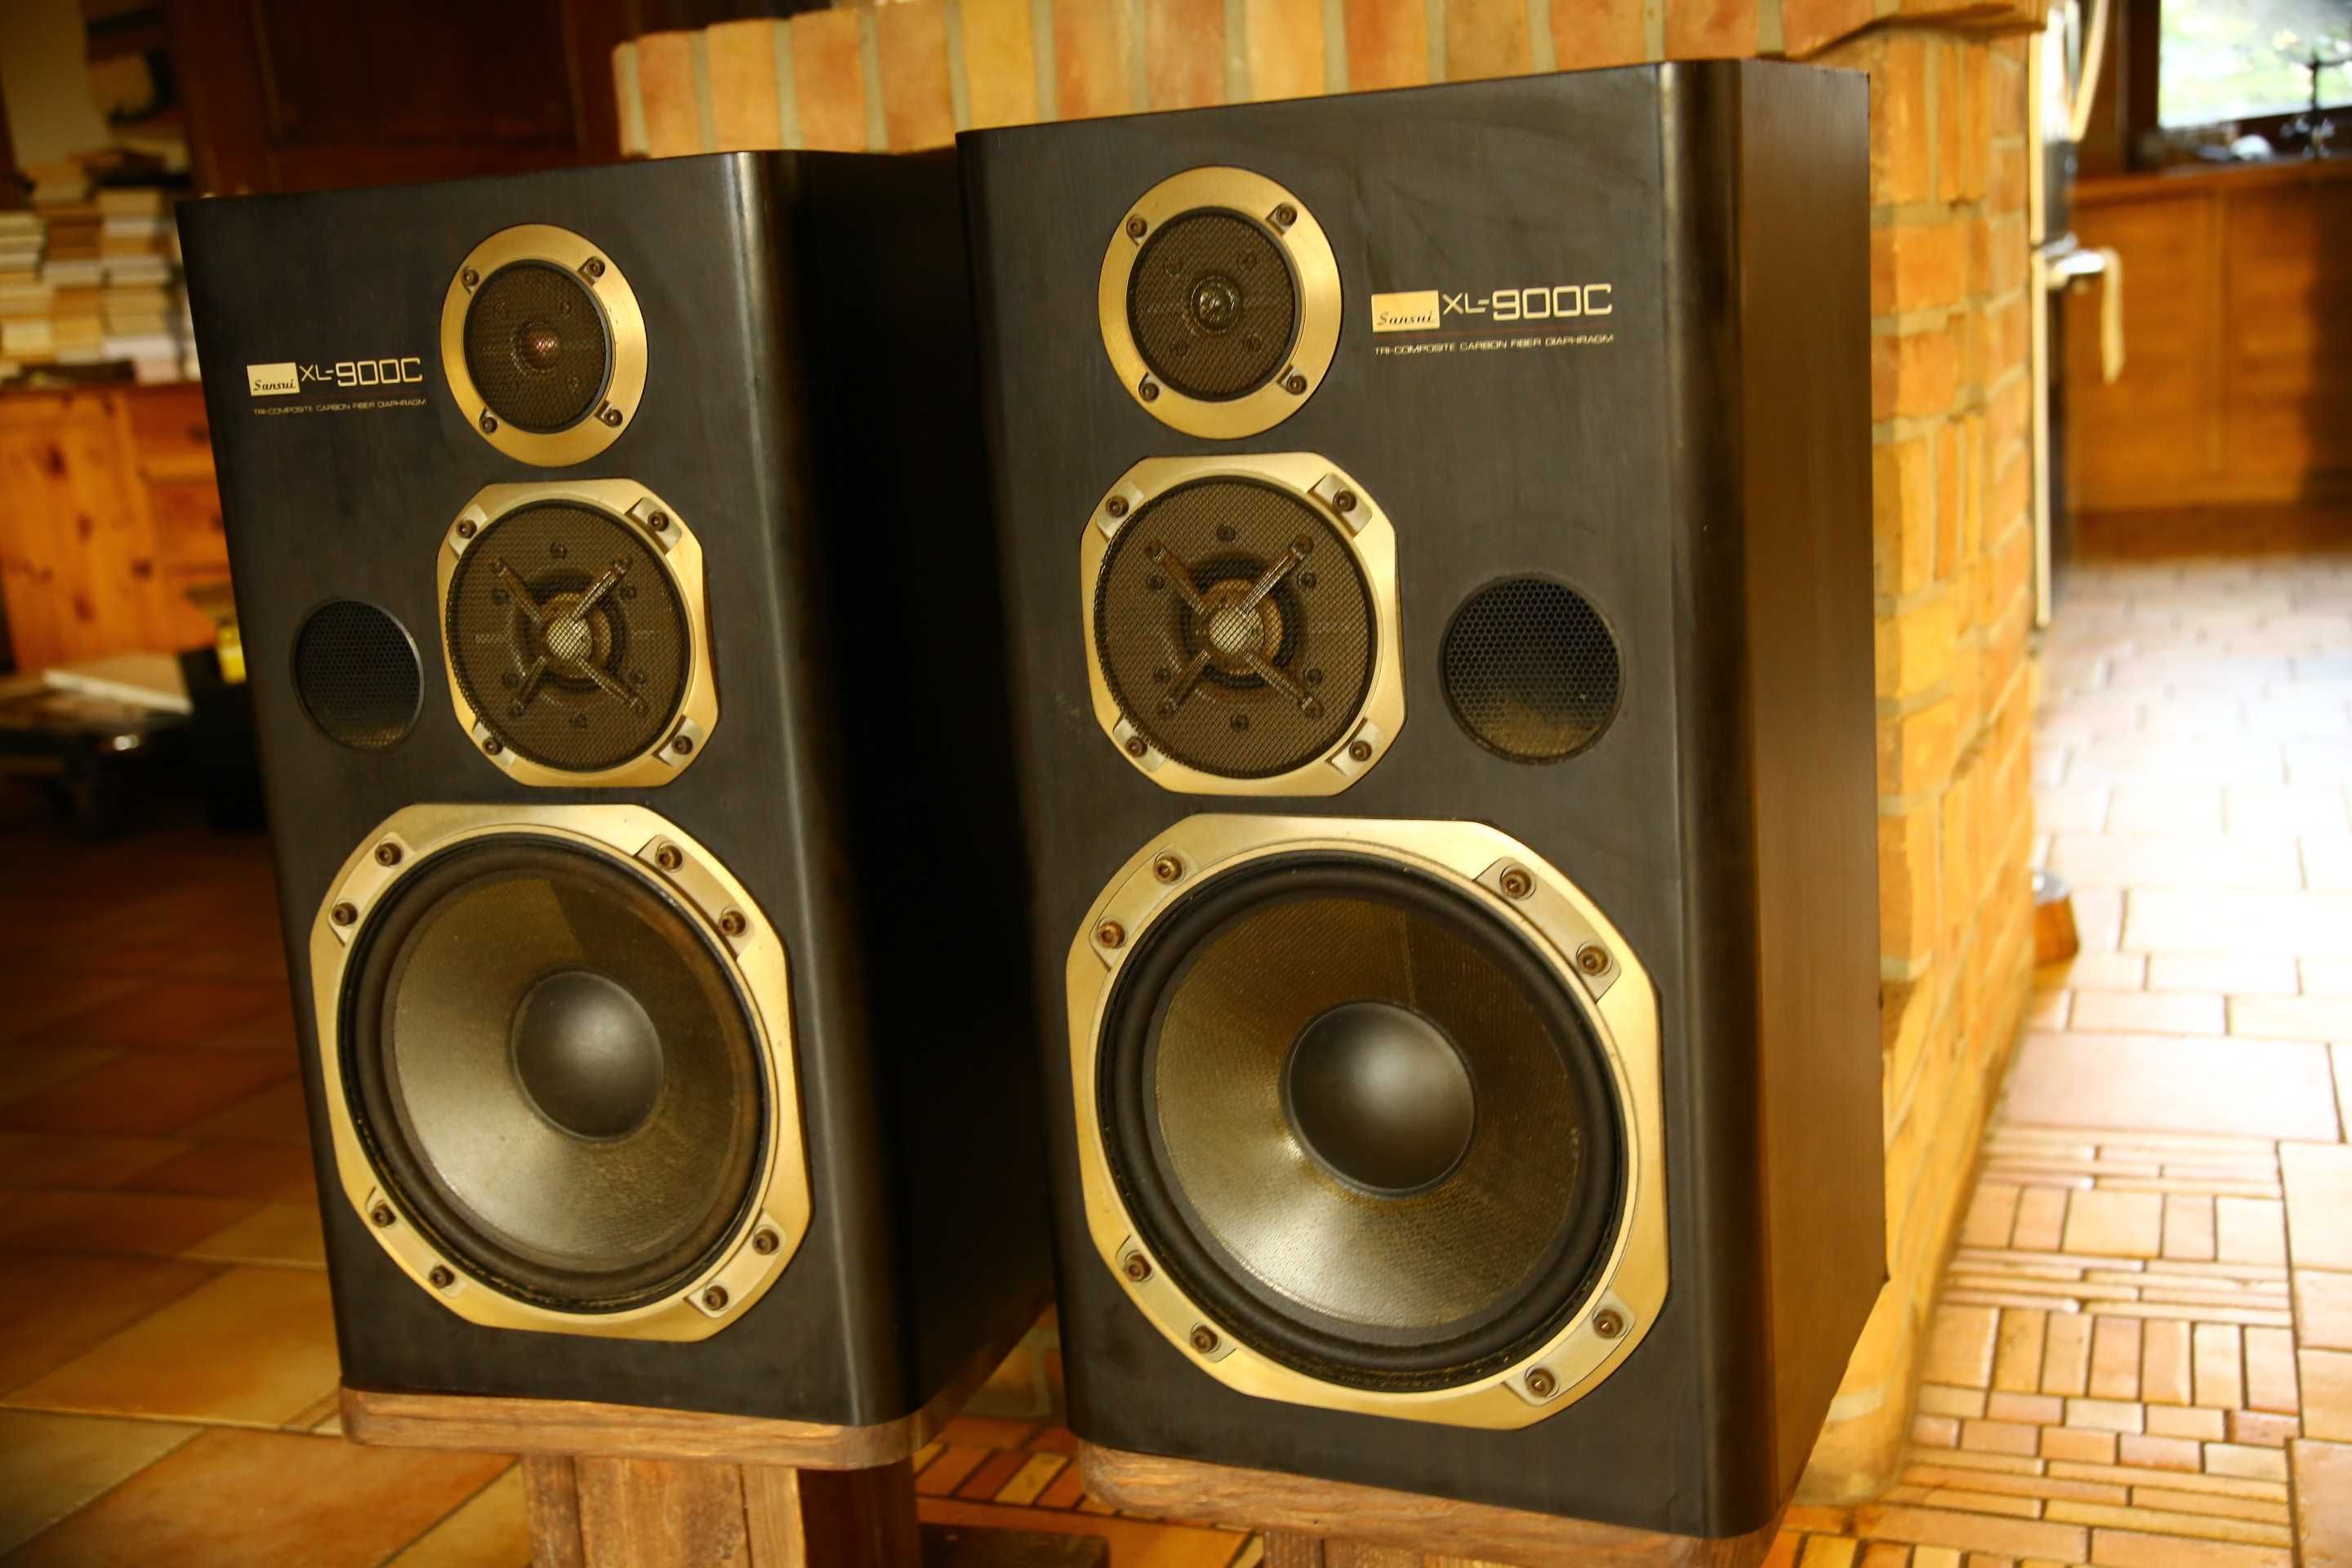 Głośniki Sansui xl-900c najwyższy model